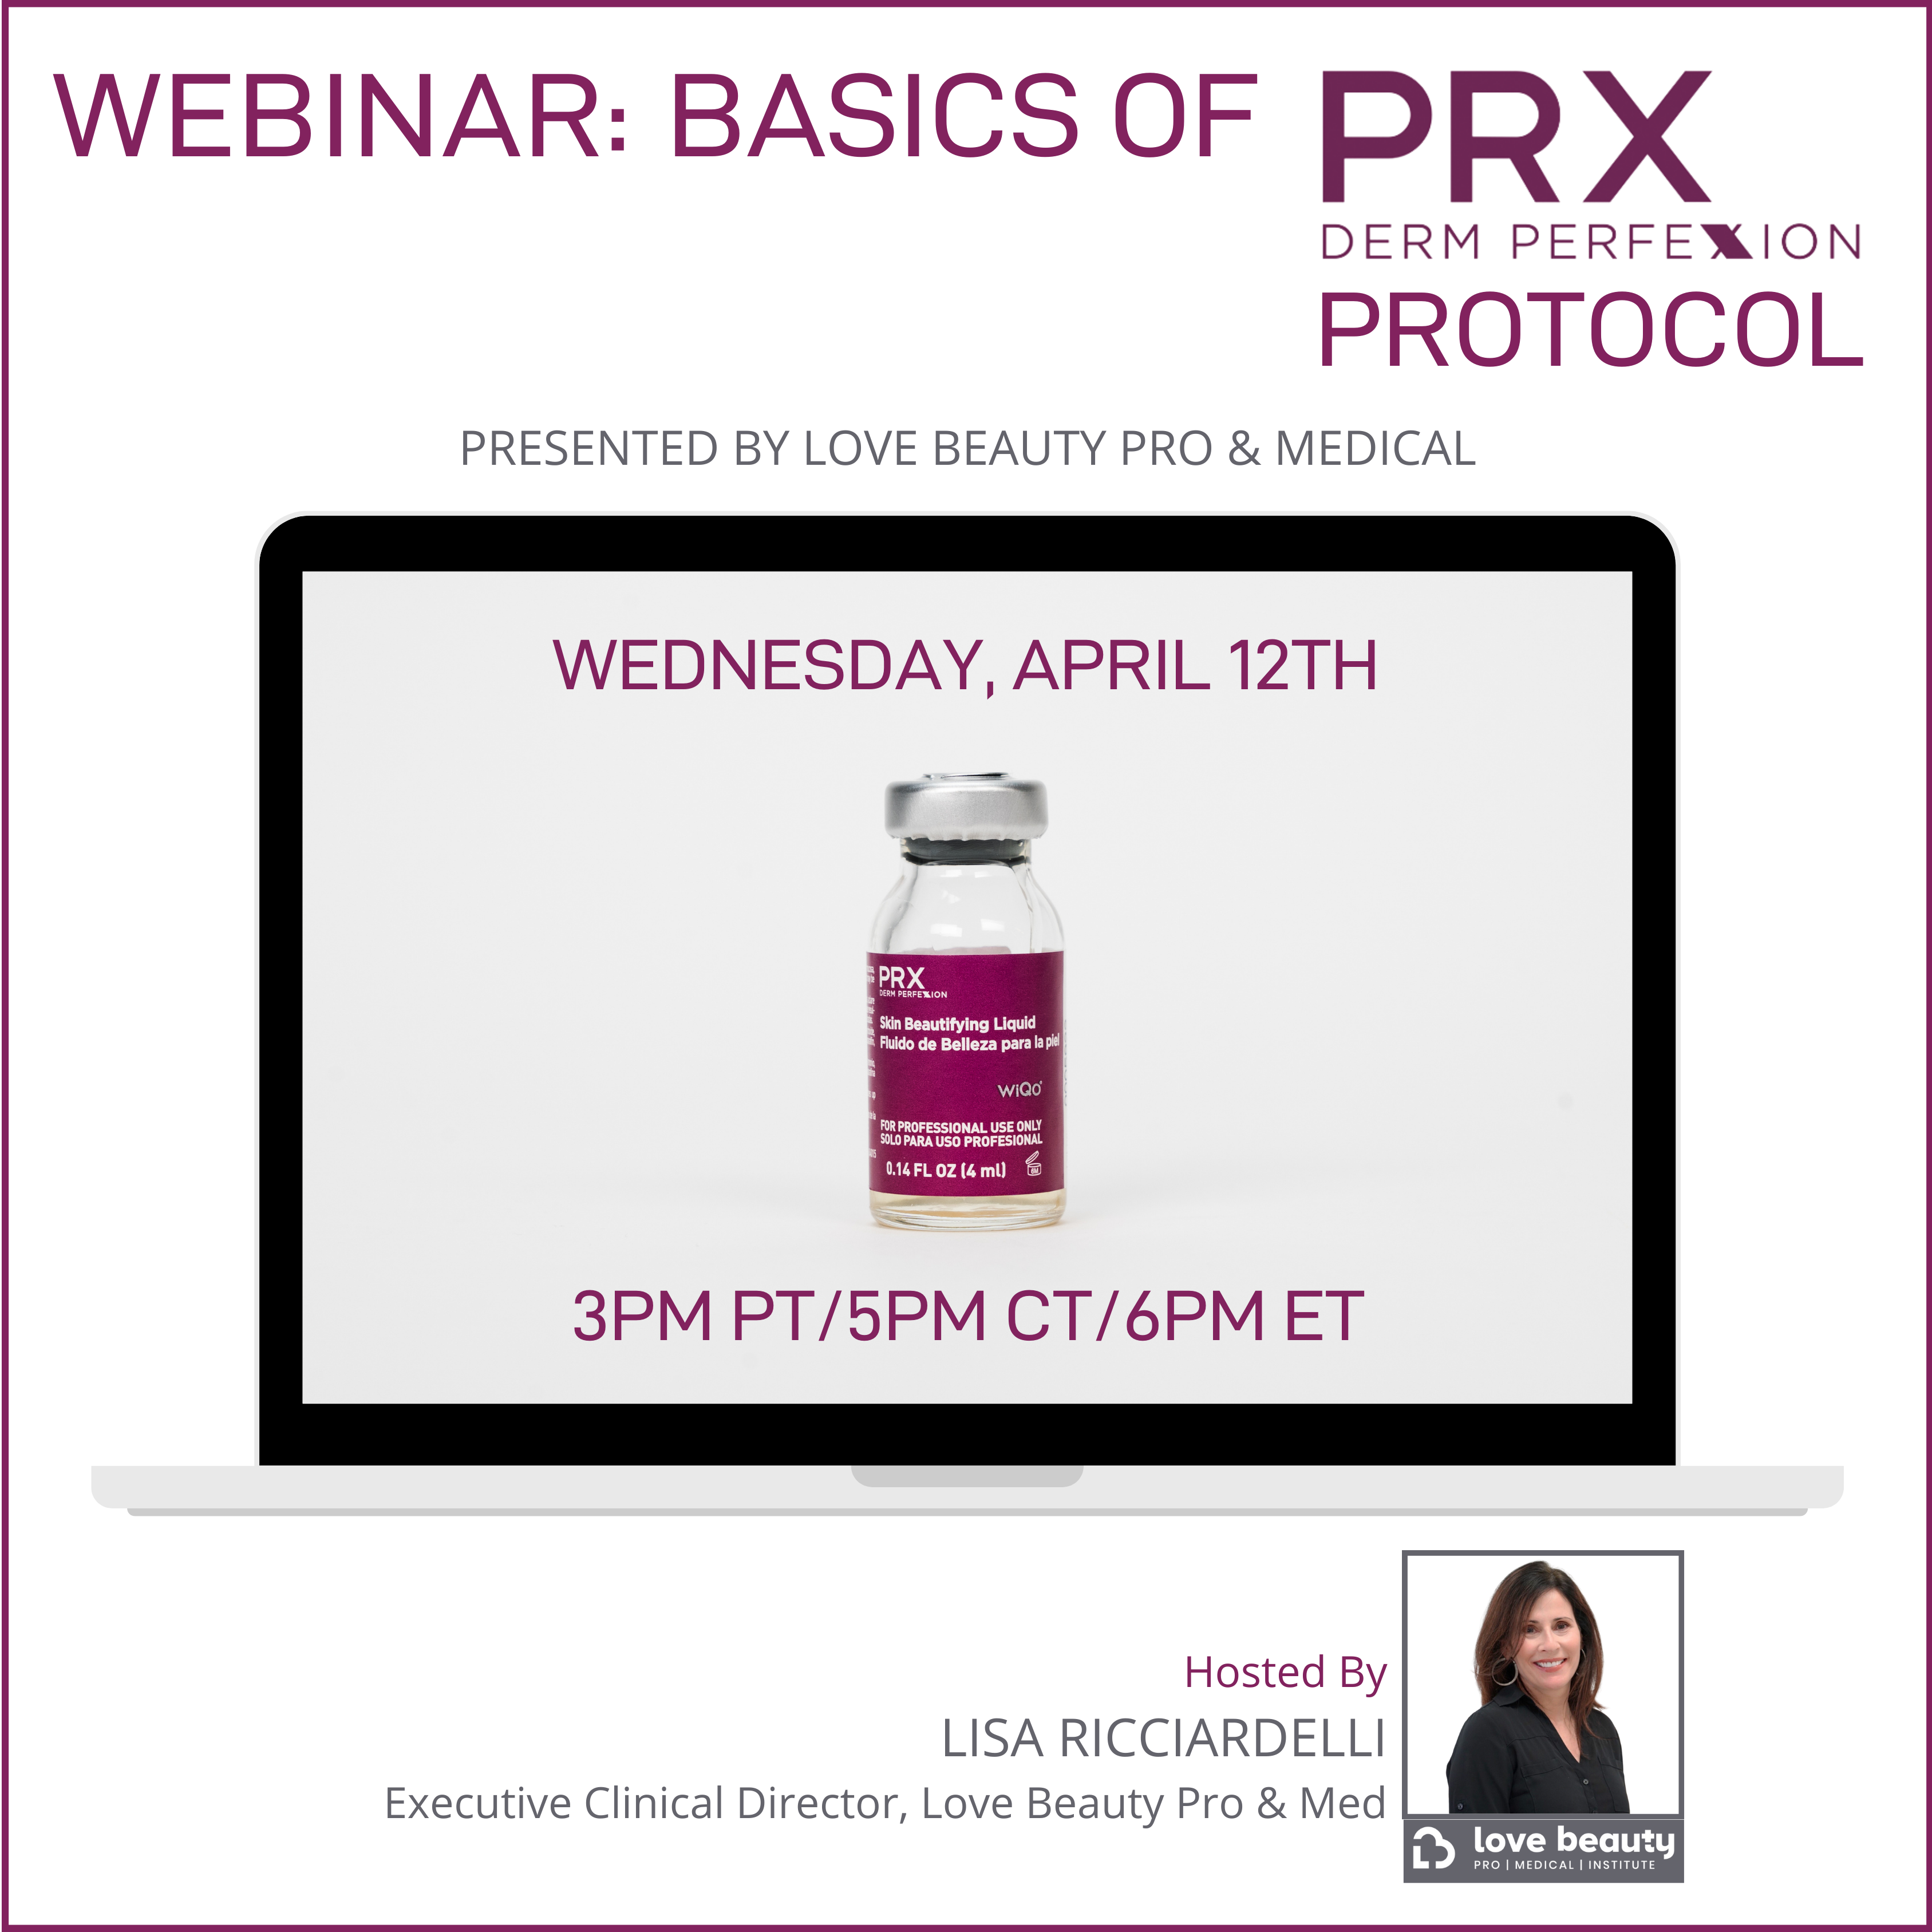 WEBINAR: Basics of PRX Derm Perfexion Protocol